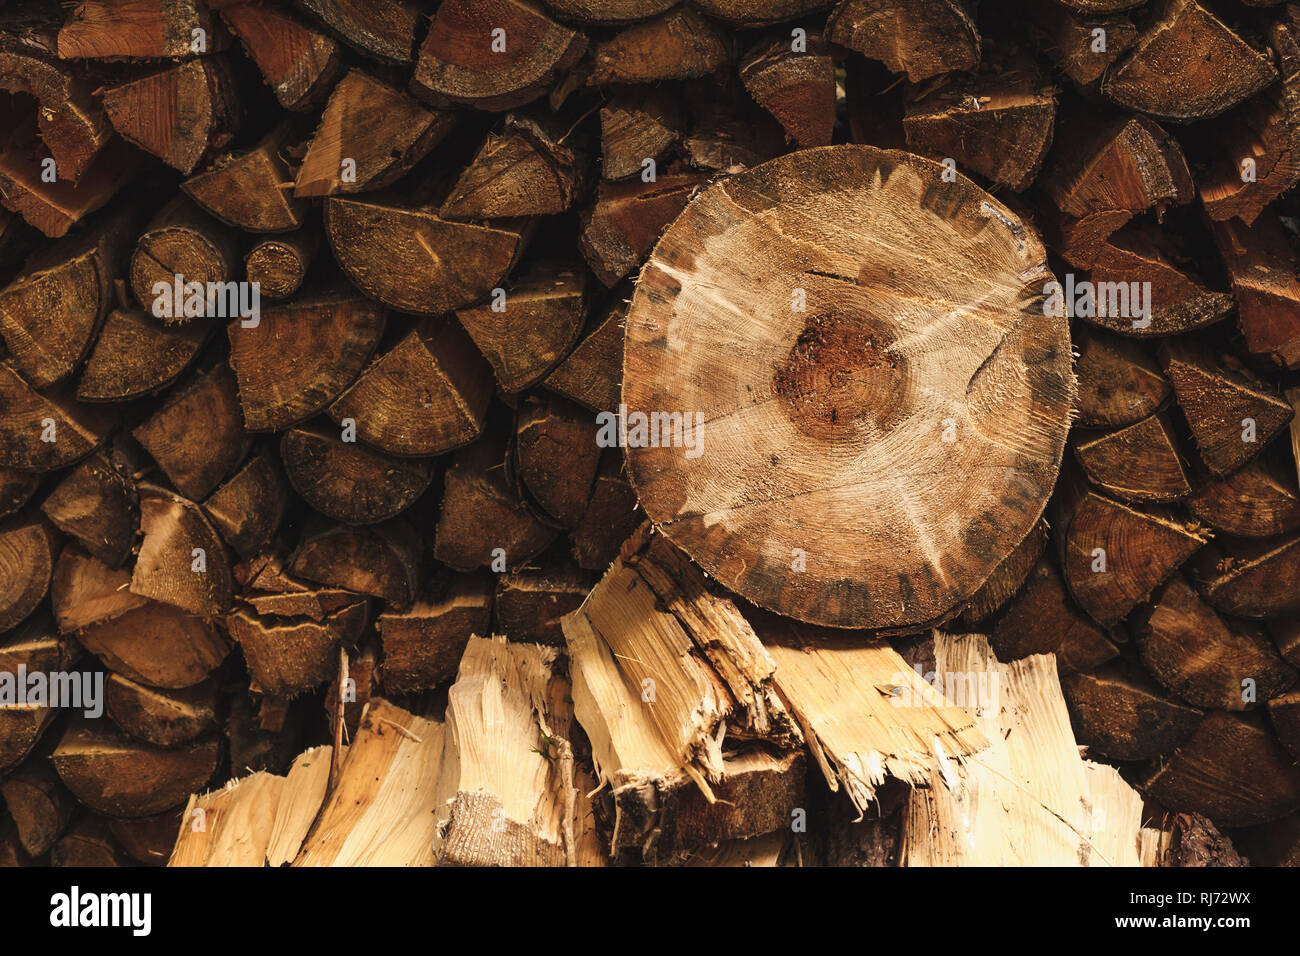 Eine runde Holzscheibe liegt auf einem Stapel Feuerholz, Stock Photo